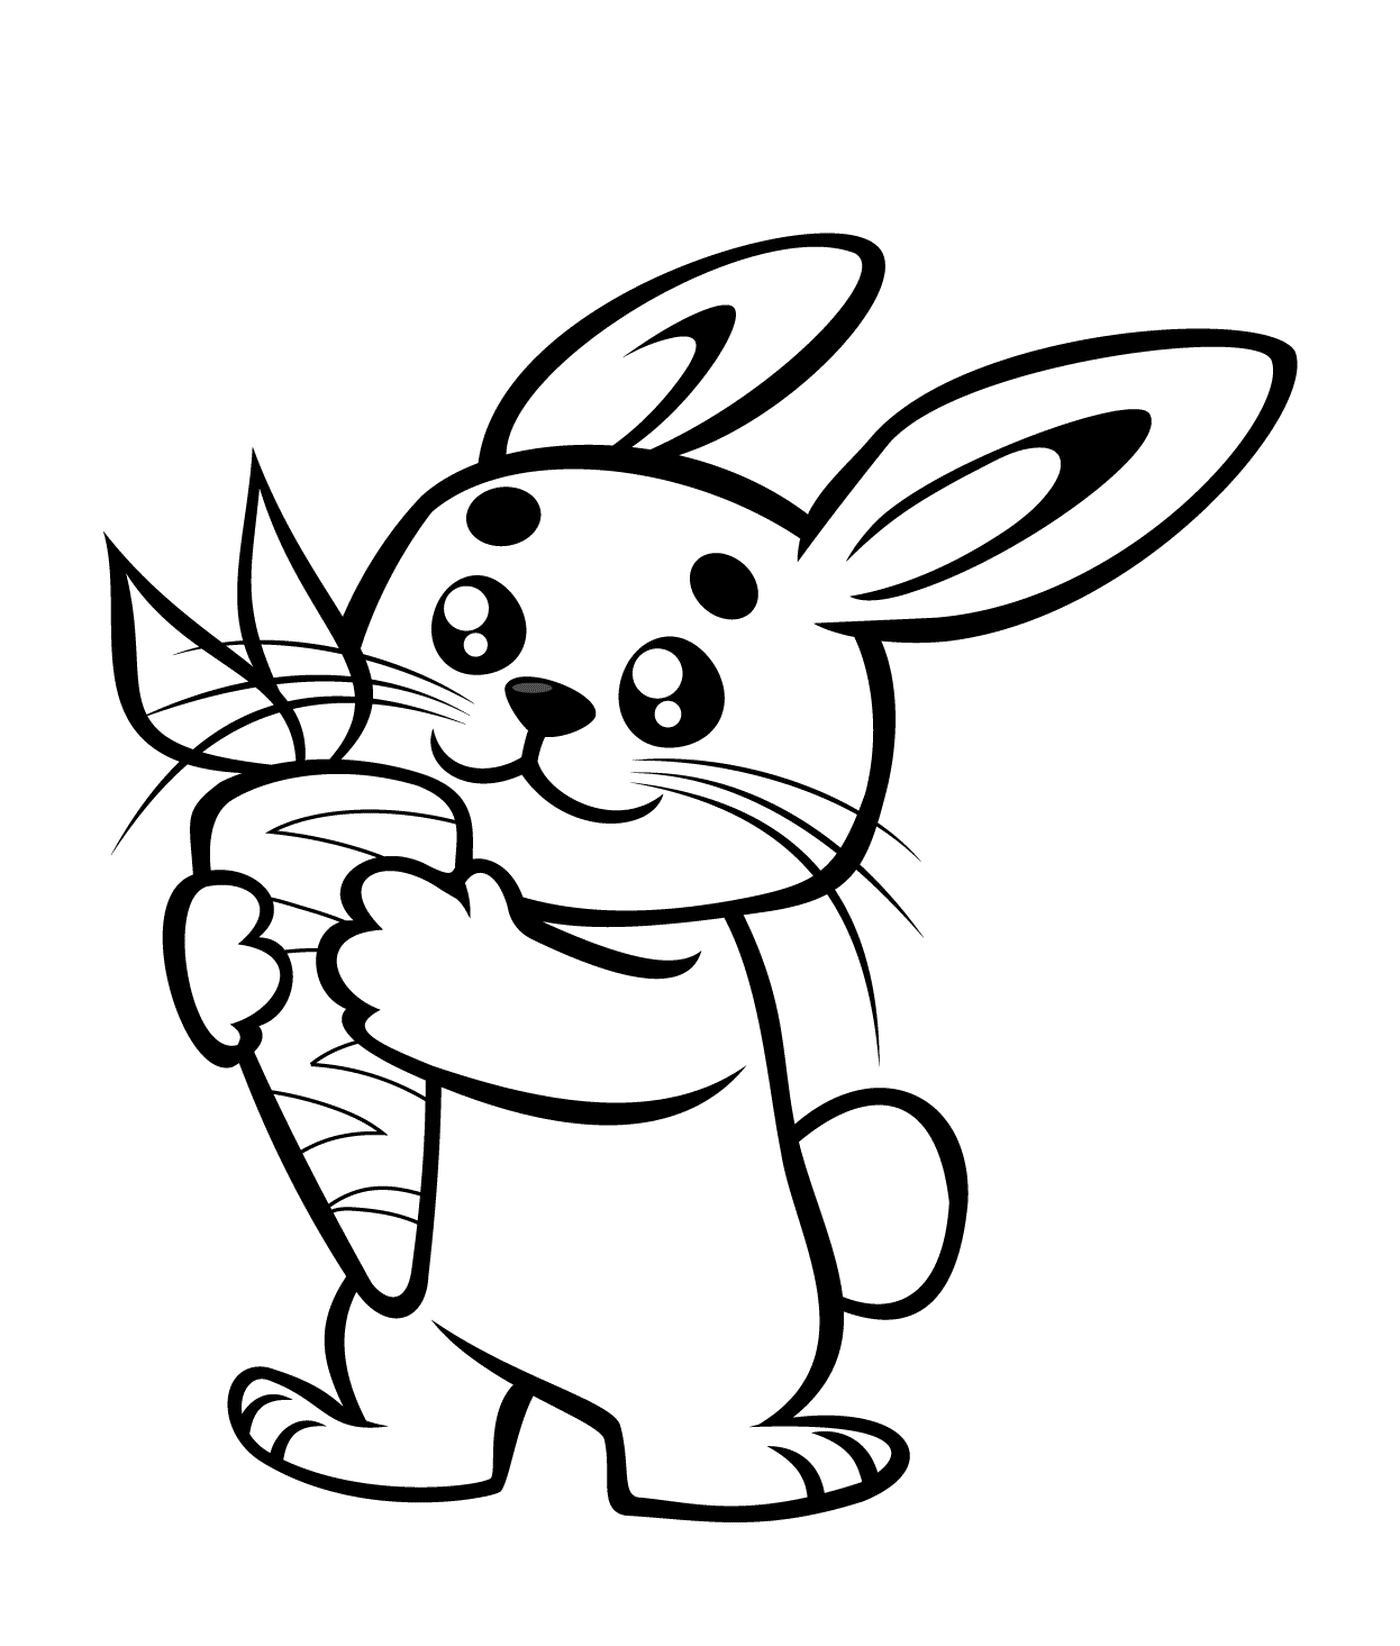  Conejo adorable que sostiene una zanahoria 